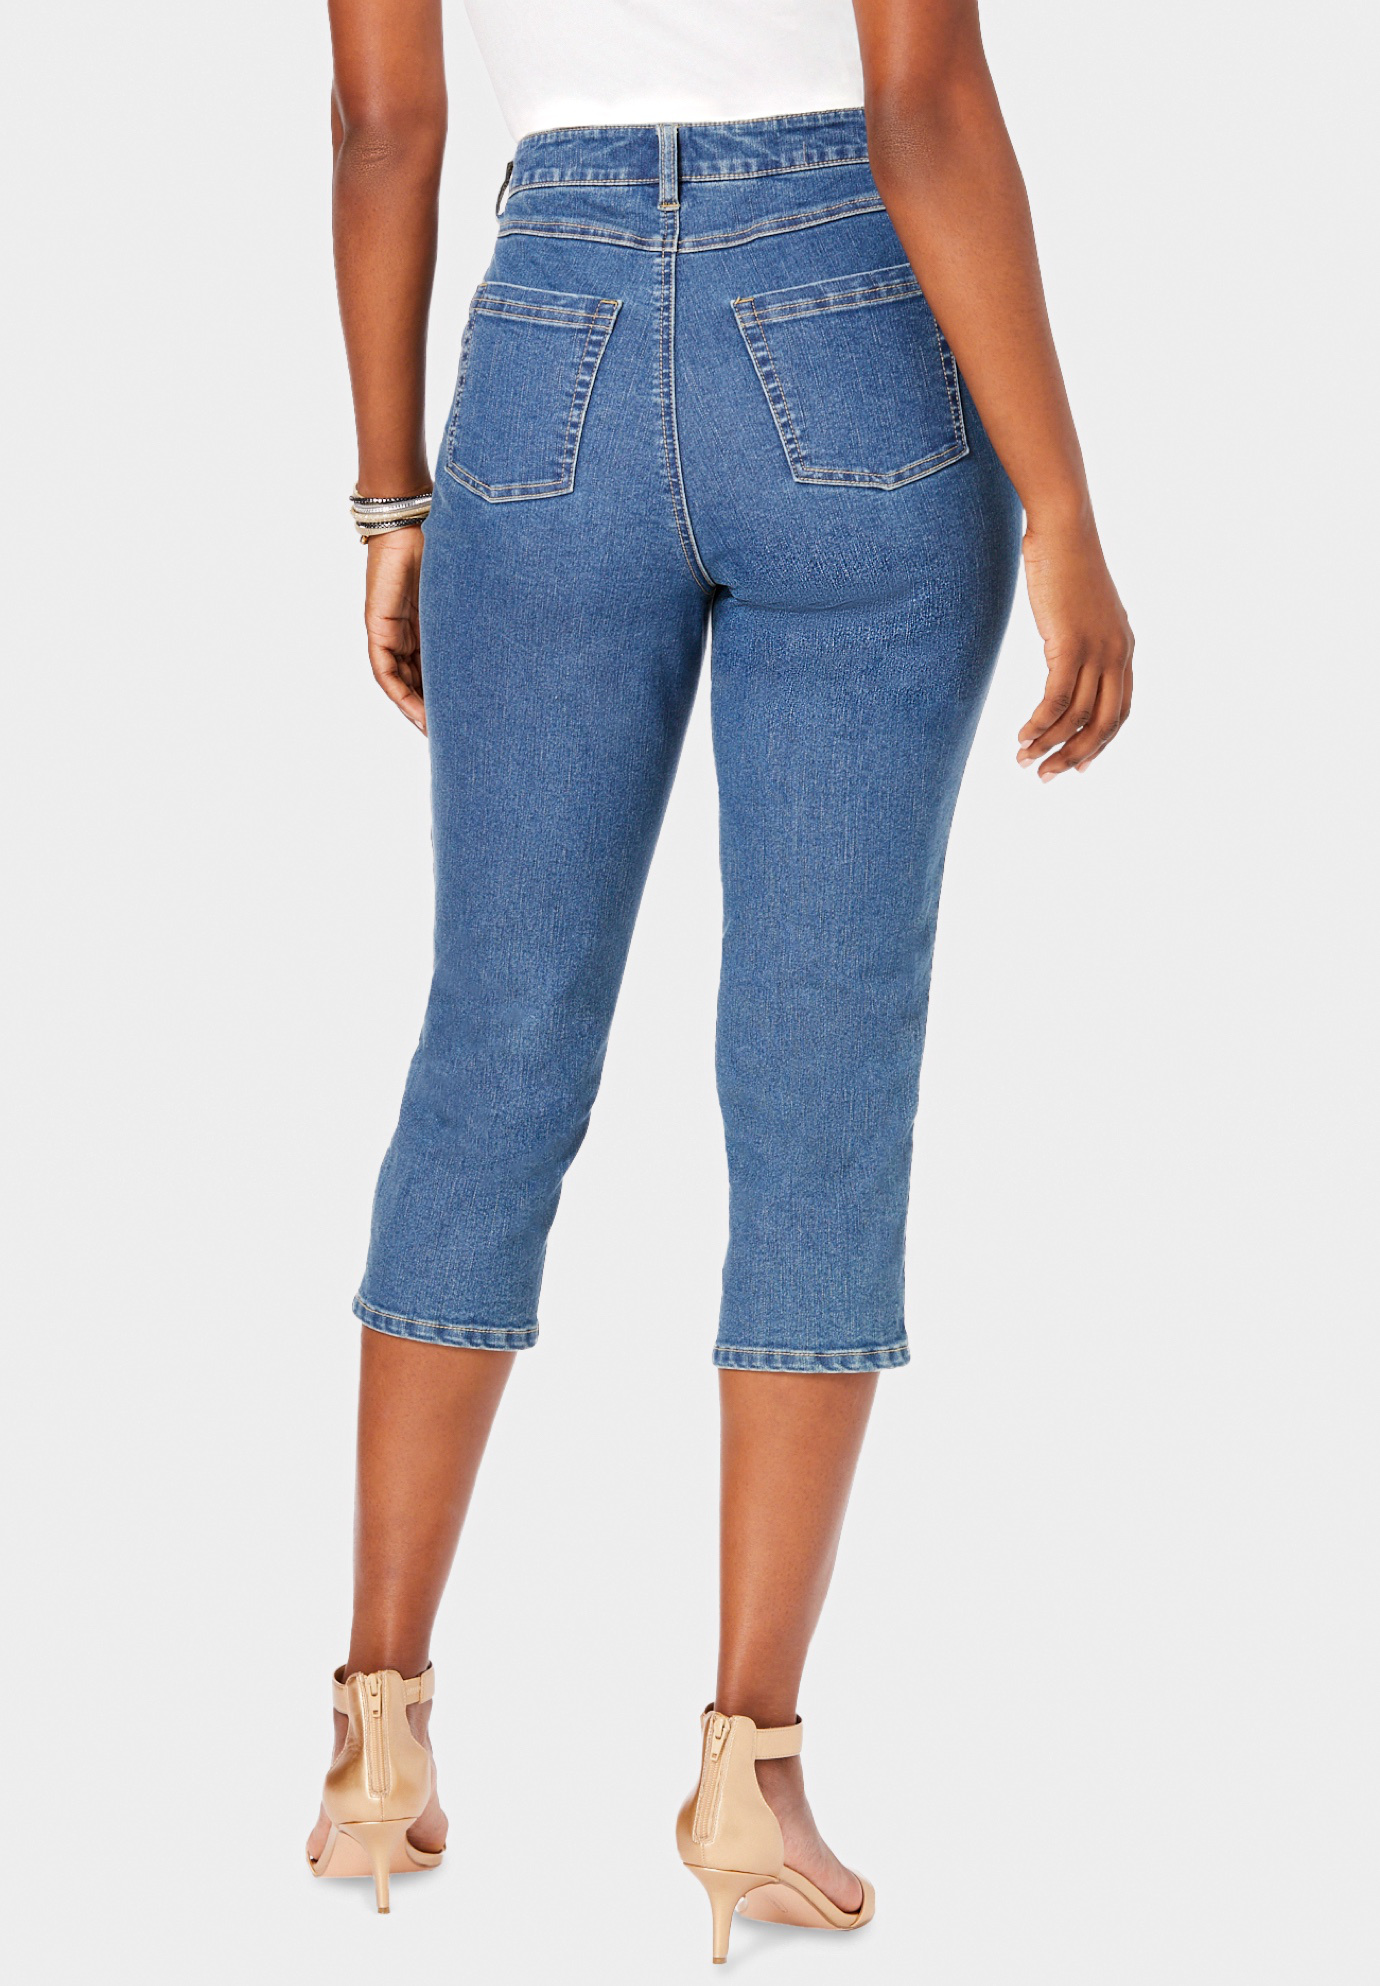 Roaman's Women's Plus Size Invisible Stretch Contour Capri Jean Jeans - image 3 of 6